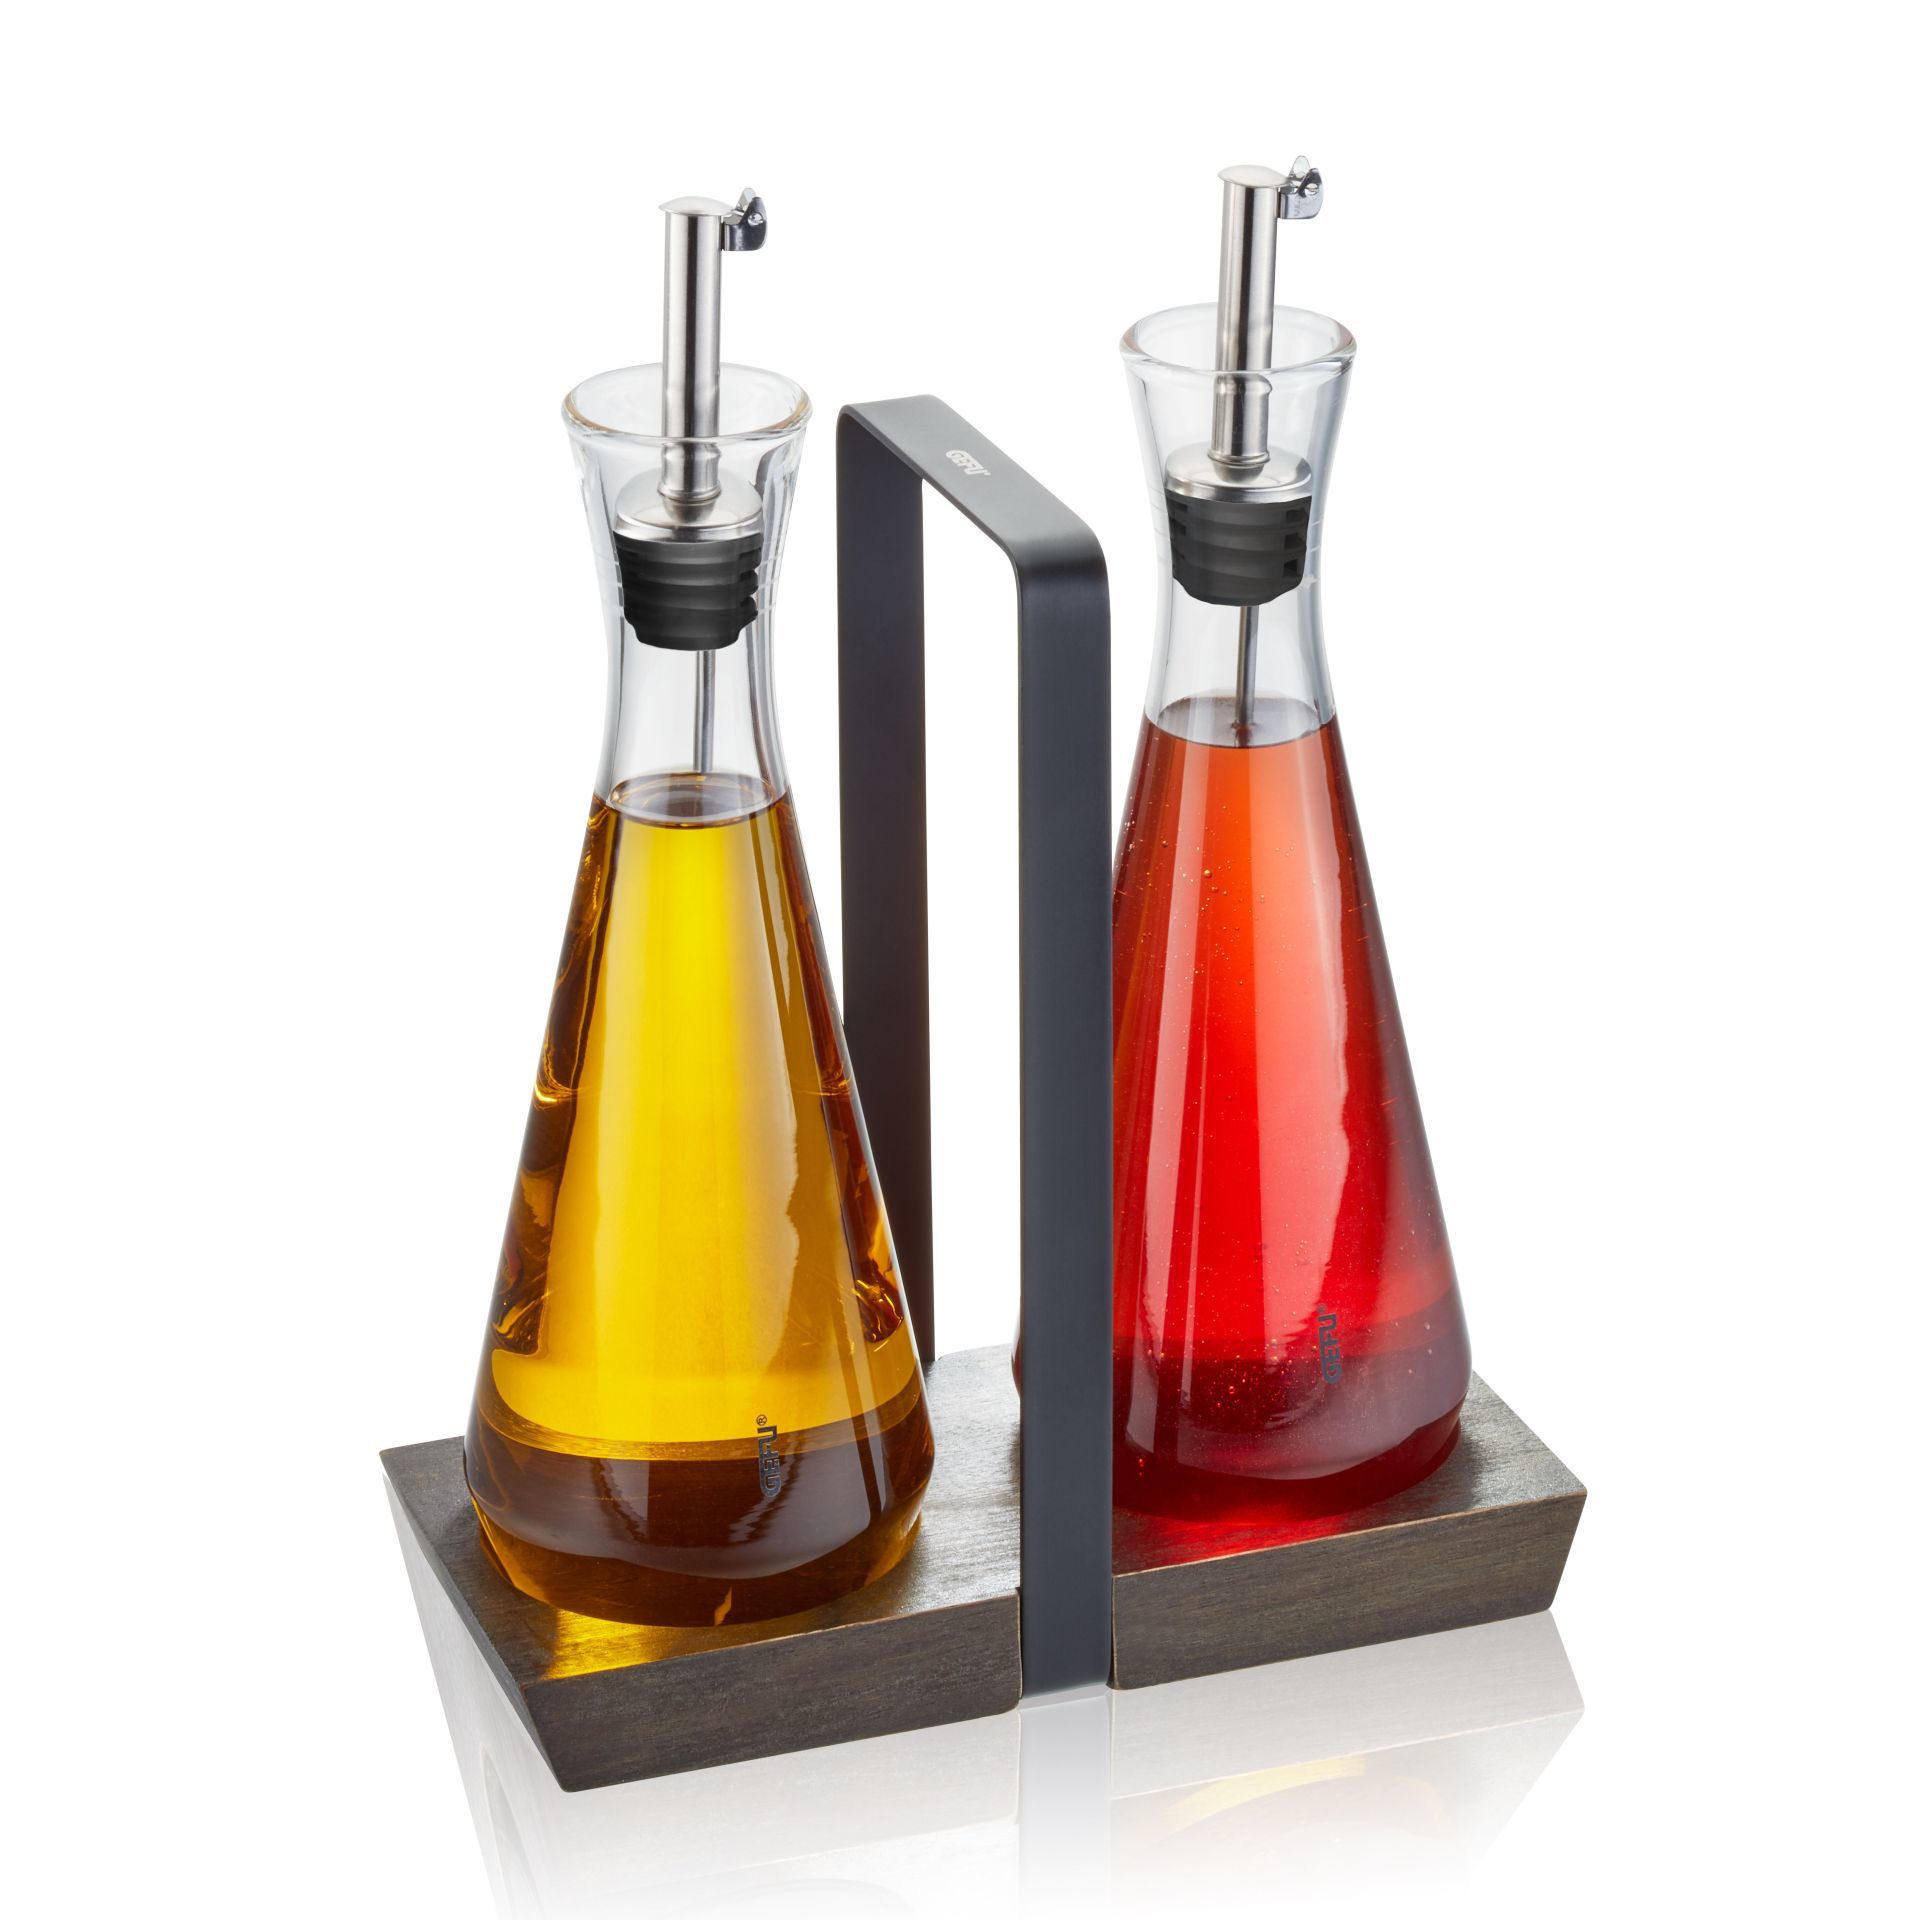 Küchenhelfer Gefu aus Glas Holz Kunststoff in Schwarz Braun Transparent GEFU Essig- und Öl-Set Akazienholz & Kristallglas